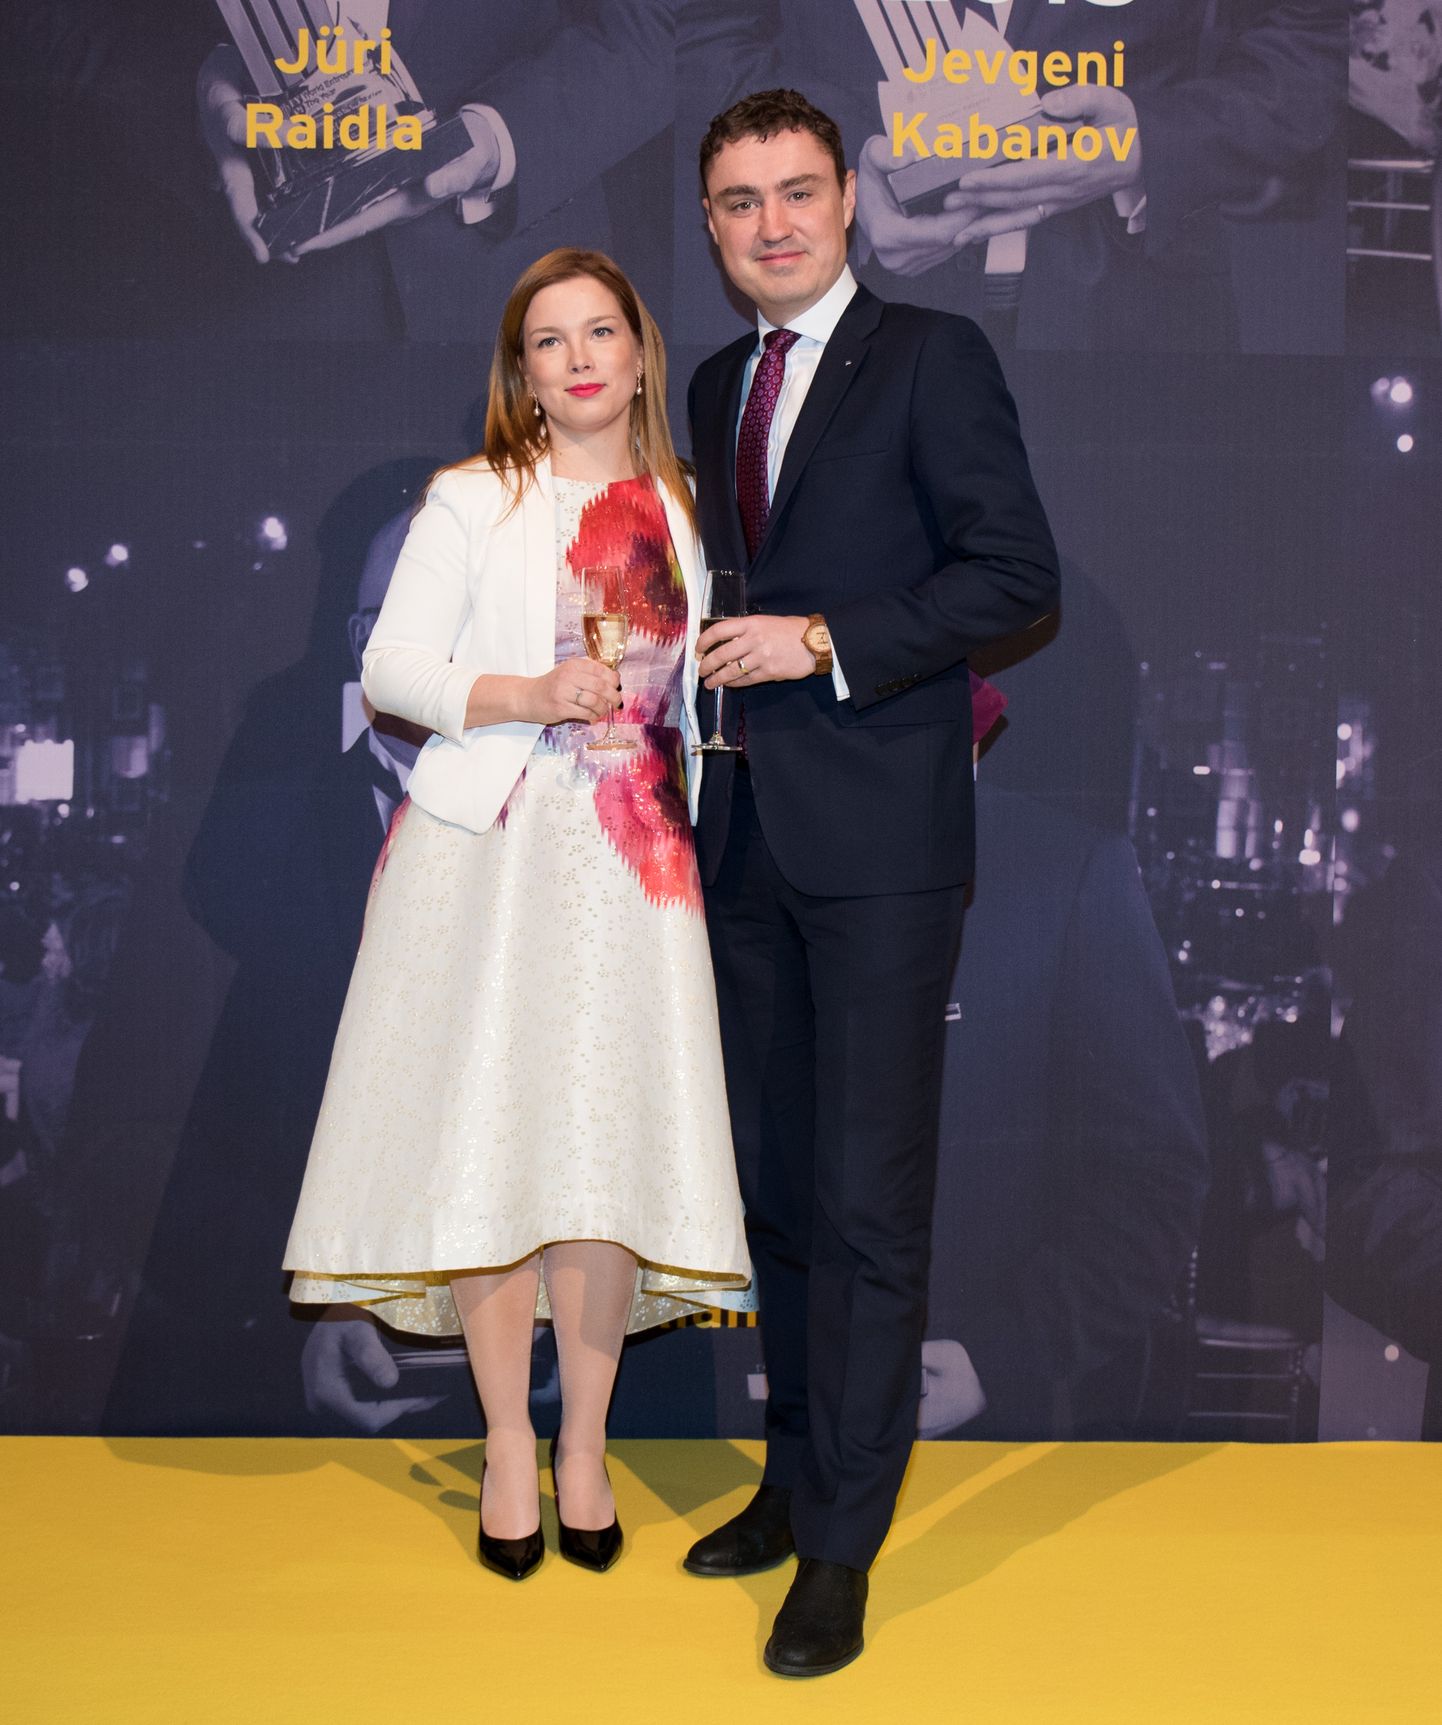 EY aasta ettevõtja gala Kultuurikatlas. Taavi ja Luisa Rõivas 2018. aastal.